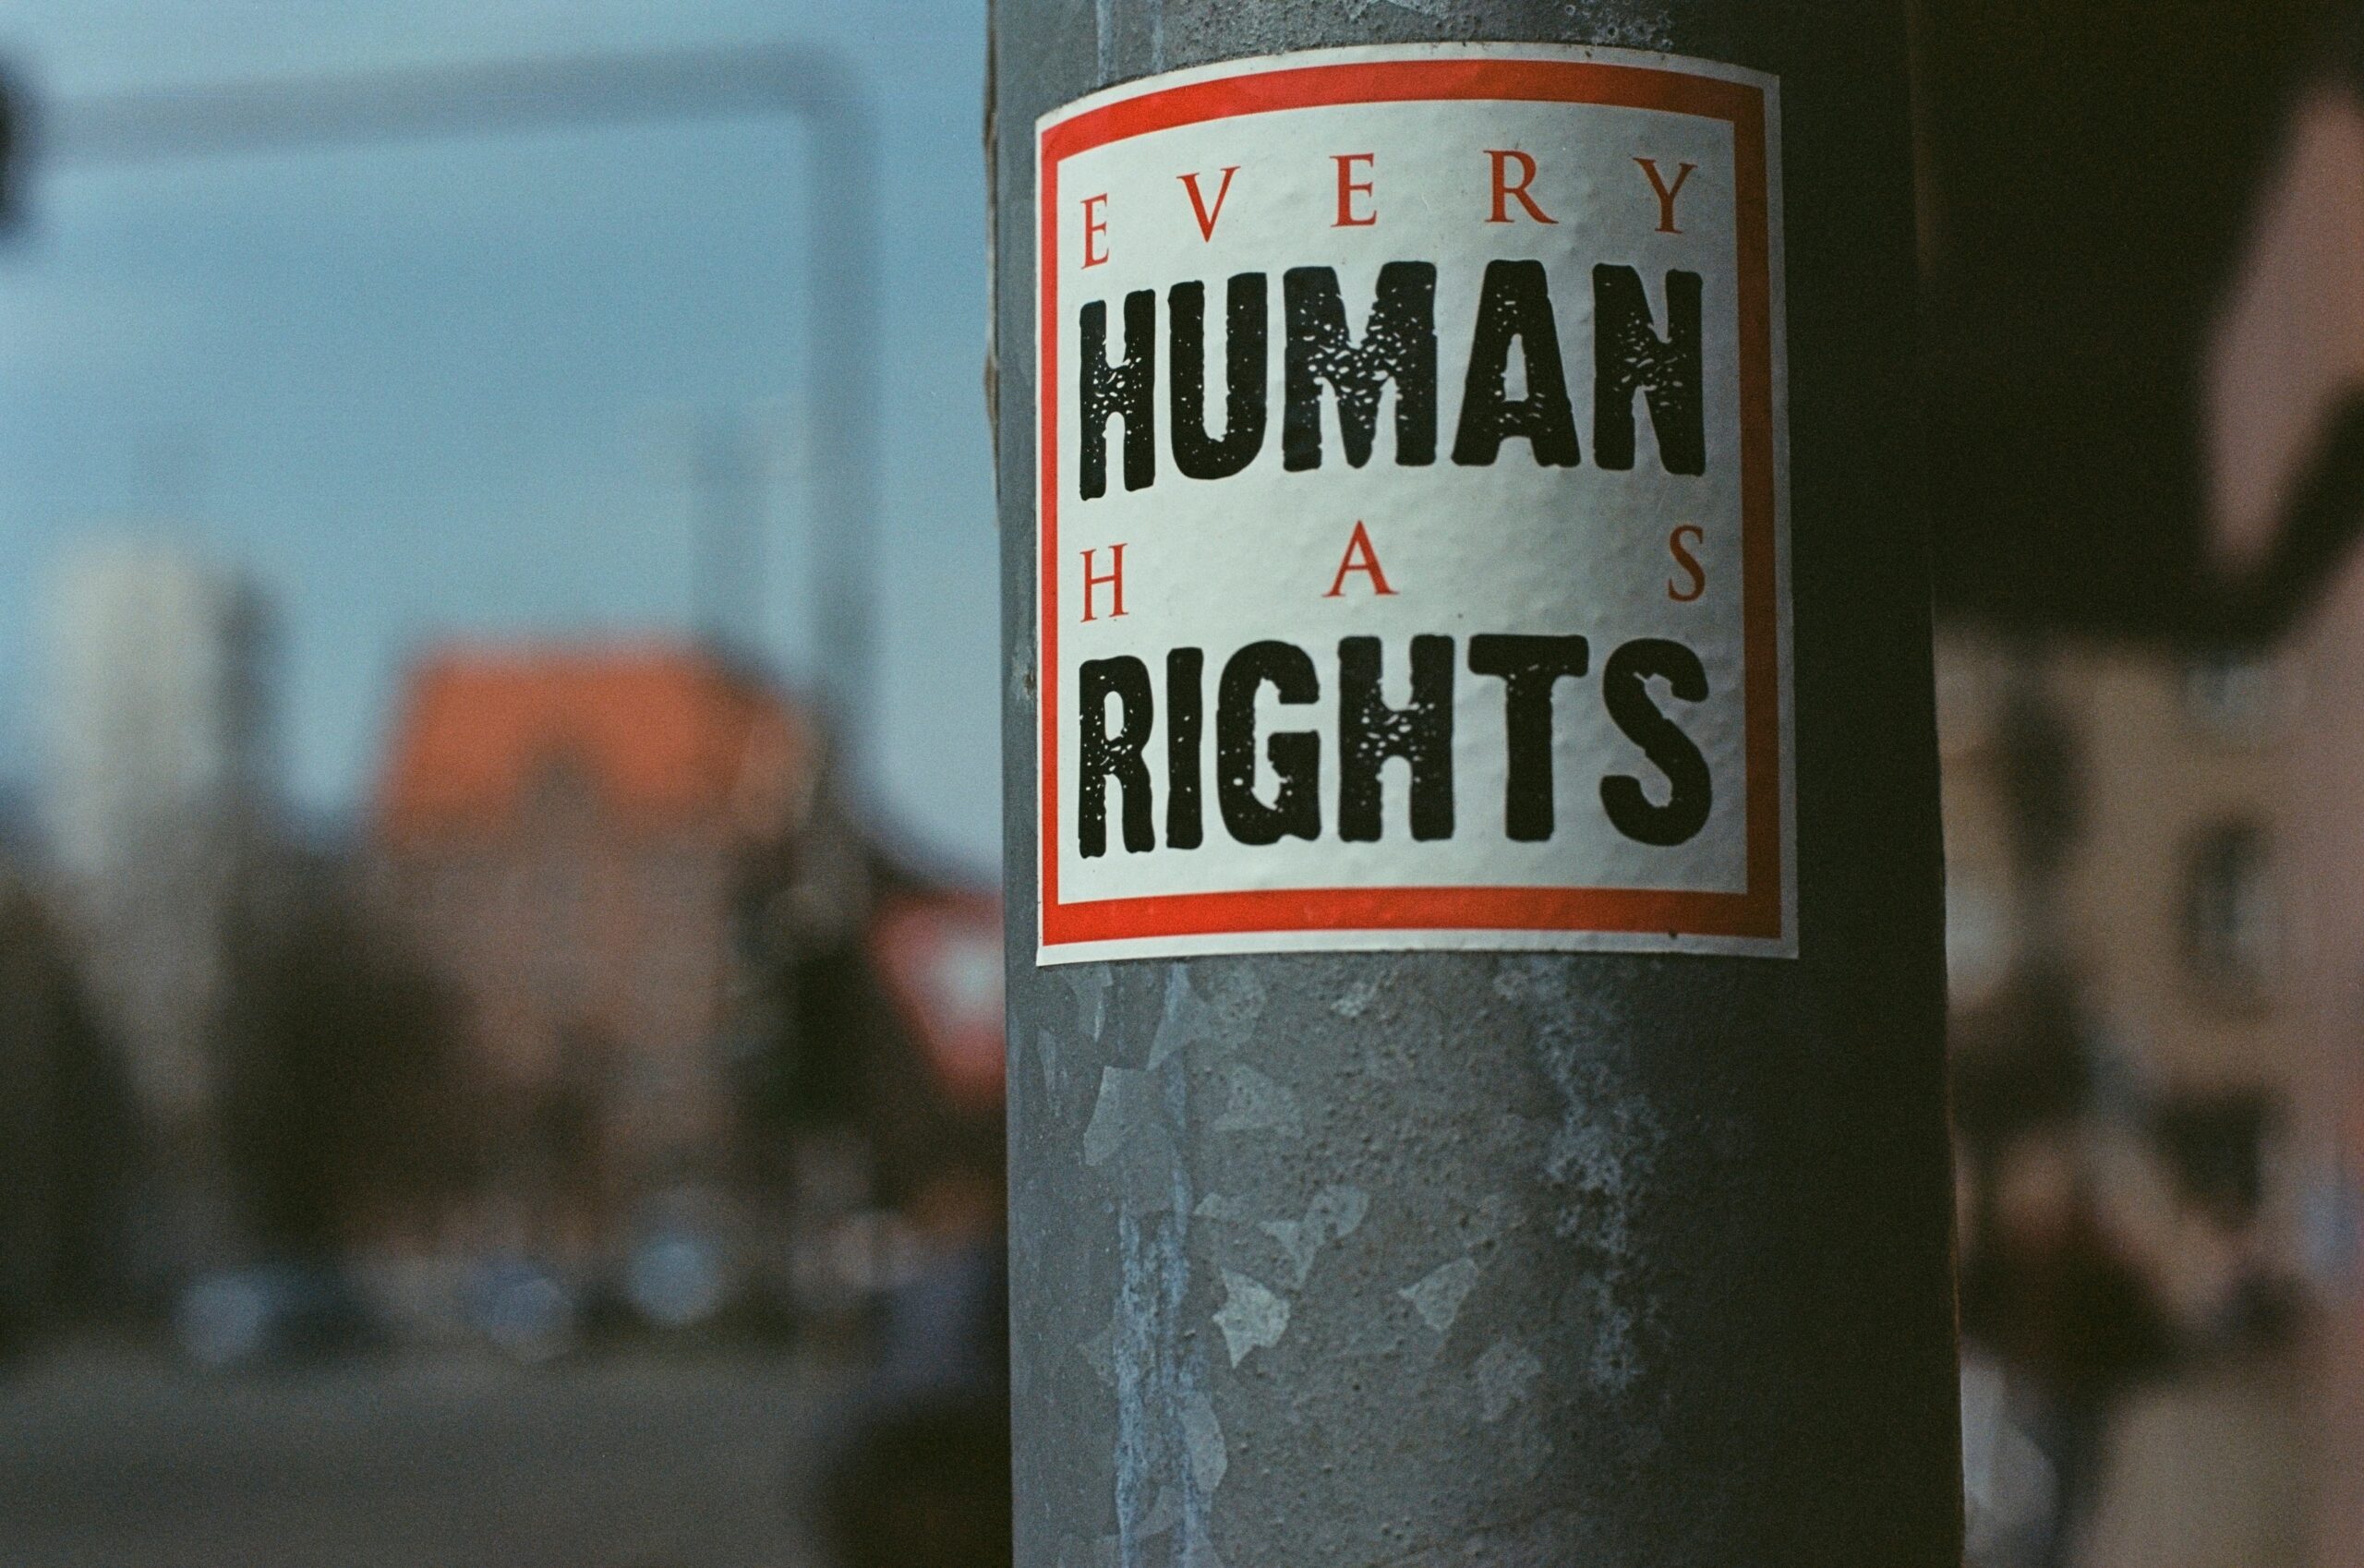 Report di Amnesty International sui diritti umani: una panoramica costruttiva